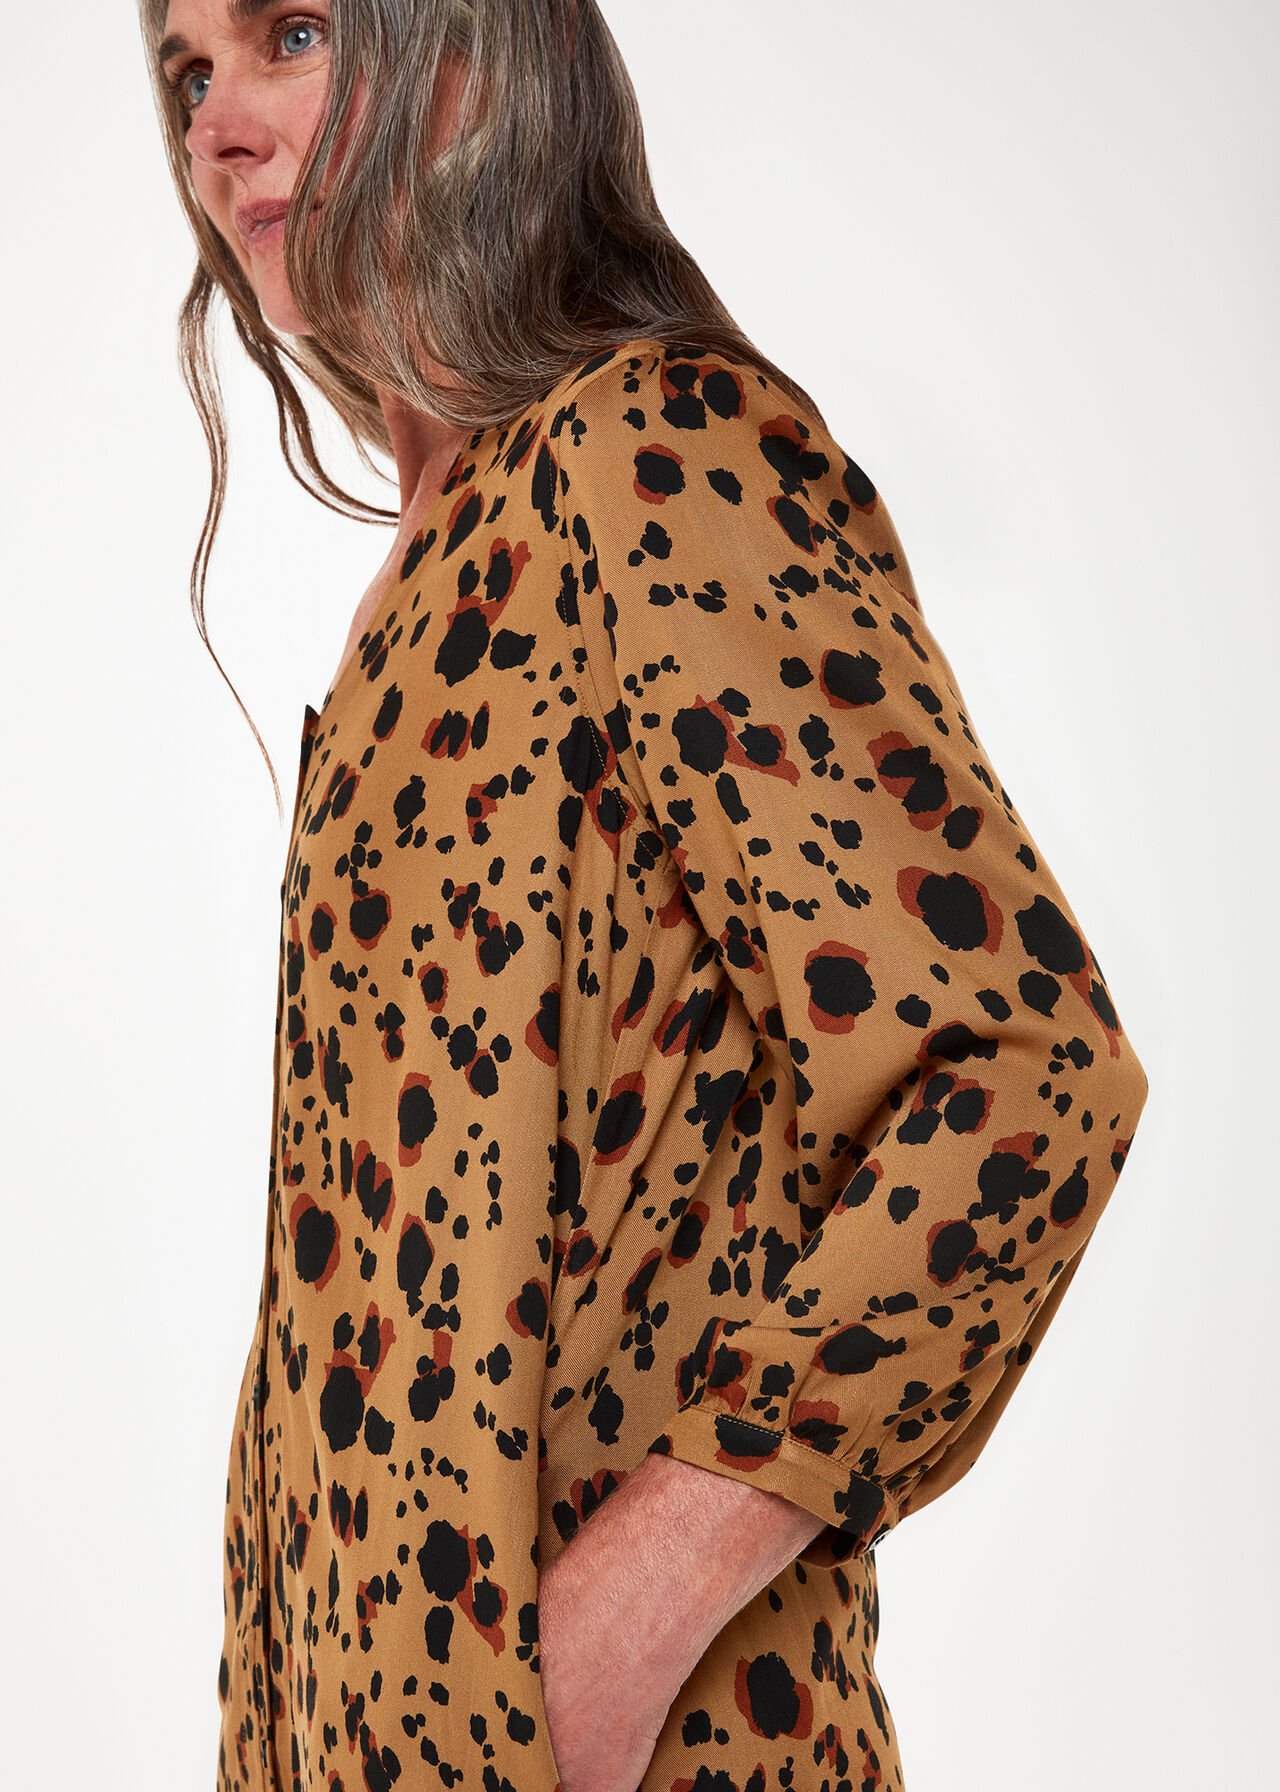 Striking Leopard Print Dress